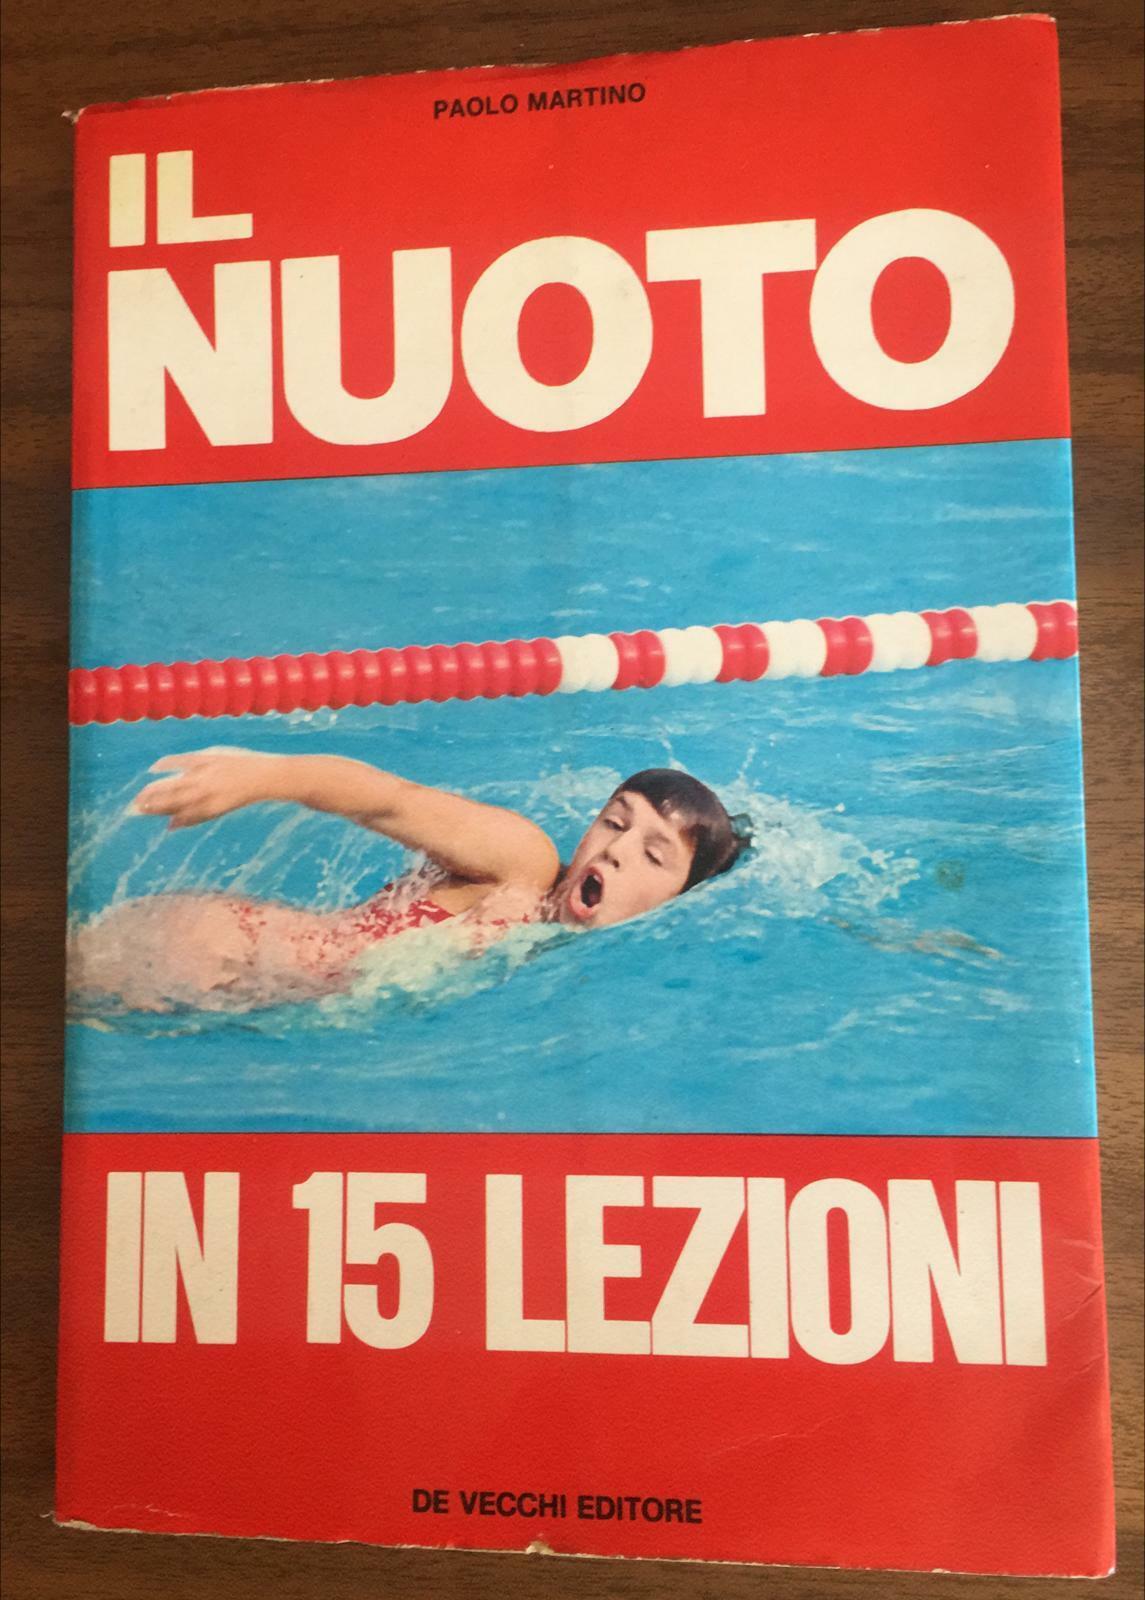 Il nuoto in 15 lezioni - Paolo Martino,  1972,  De Vecchi Editore - P